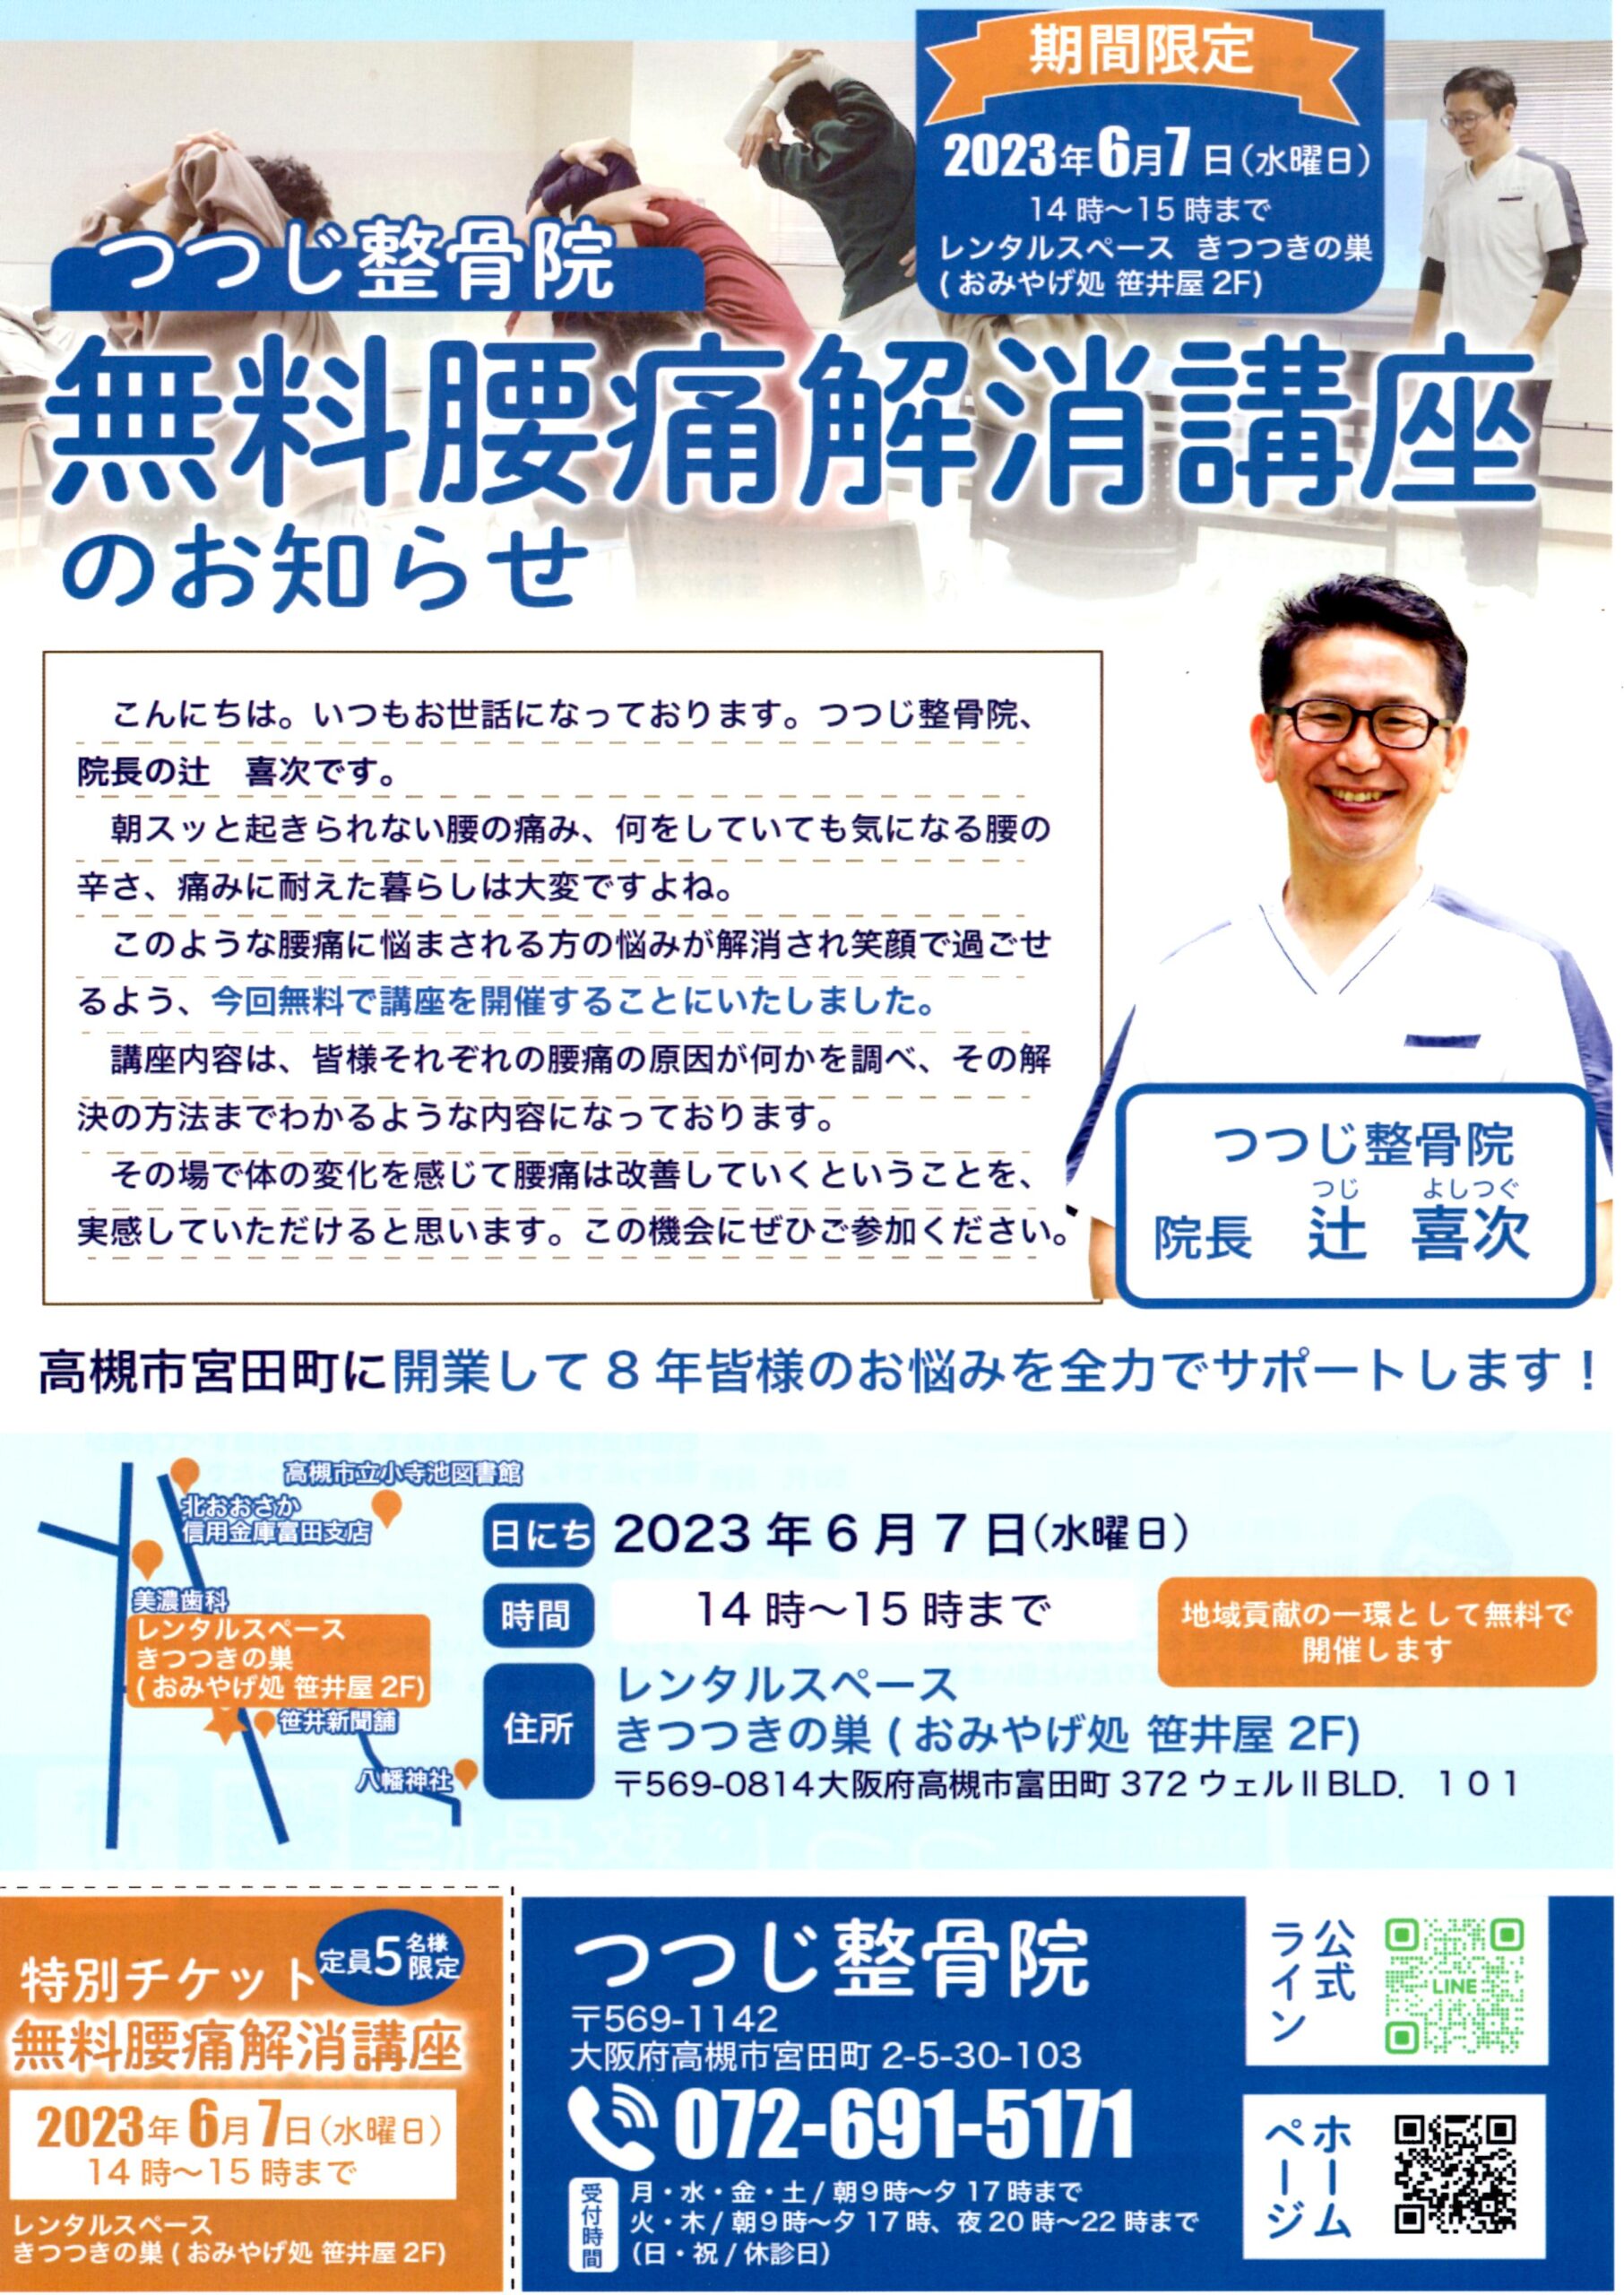 6月7日水曜日に摂津富田で【無料腰痛解消講座】を開催します